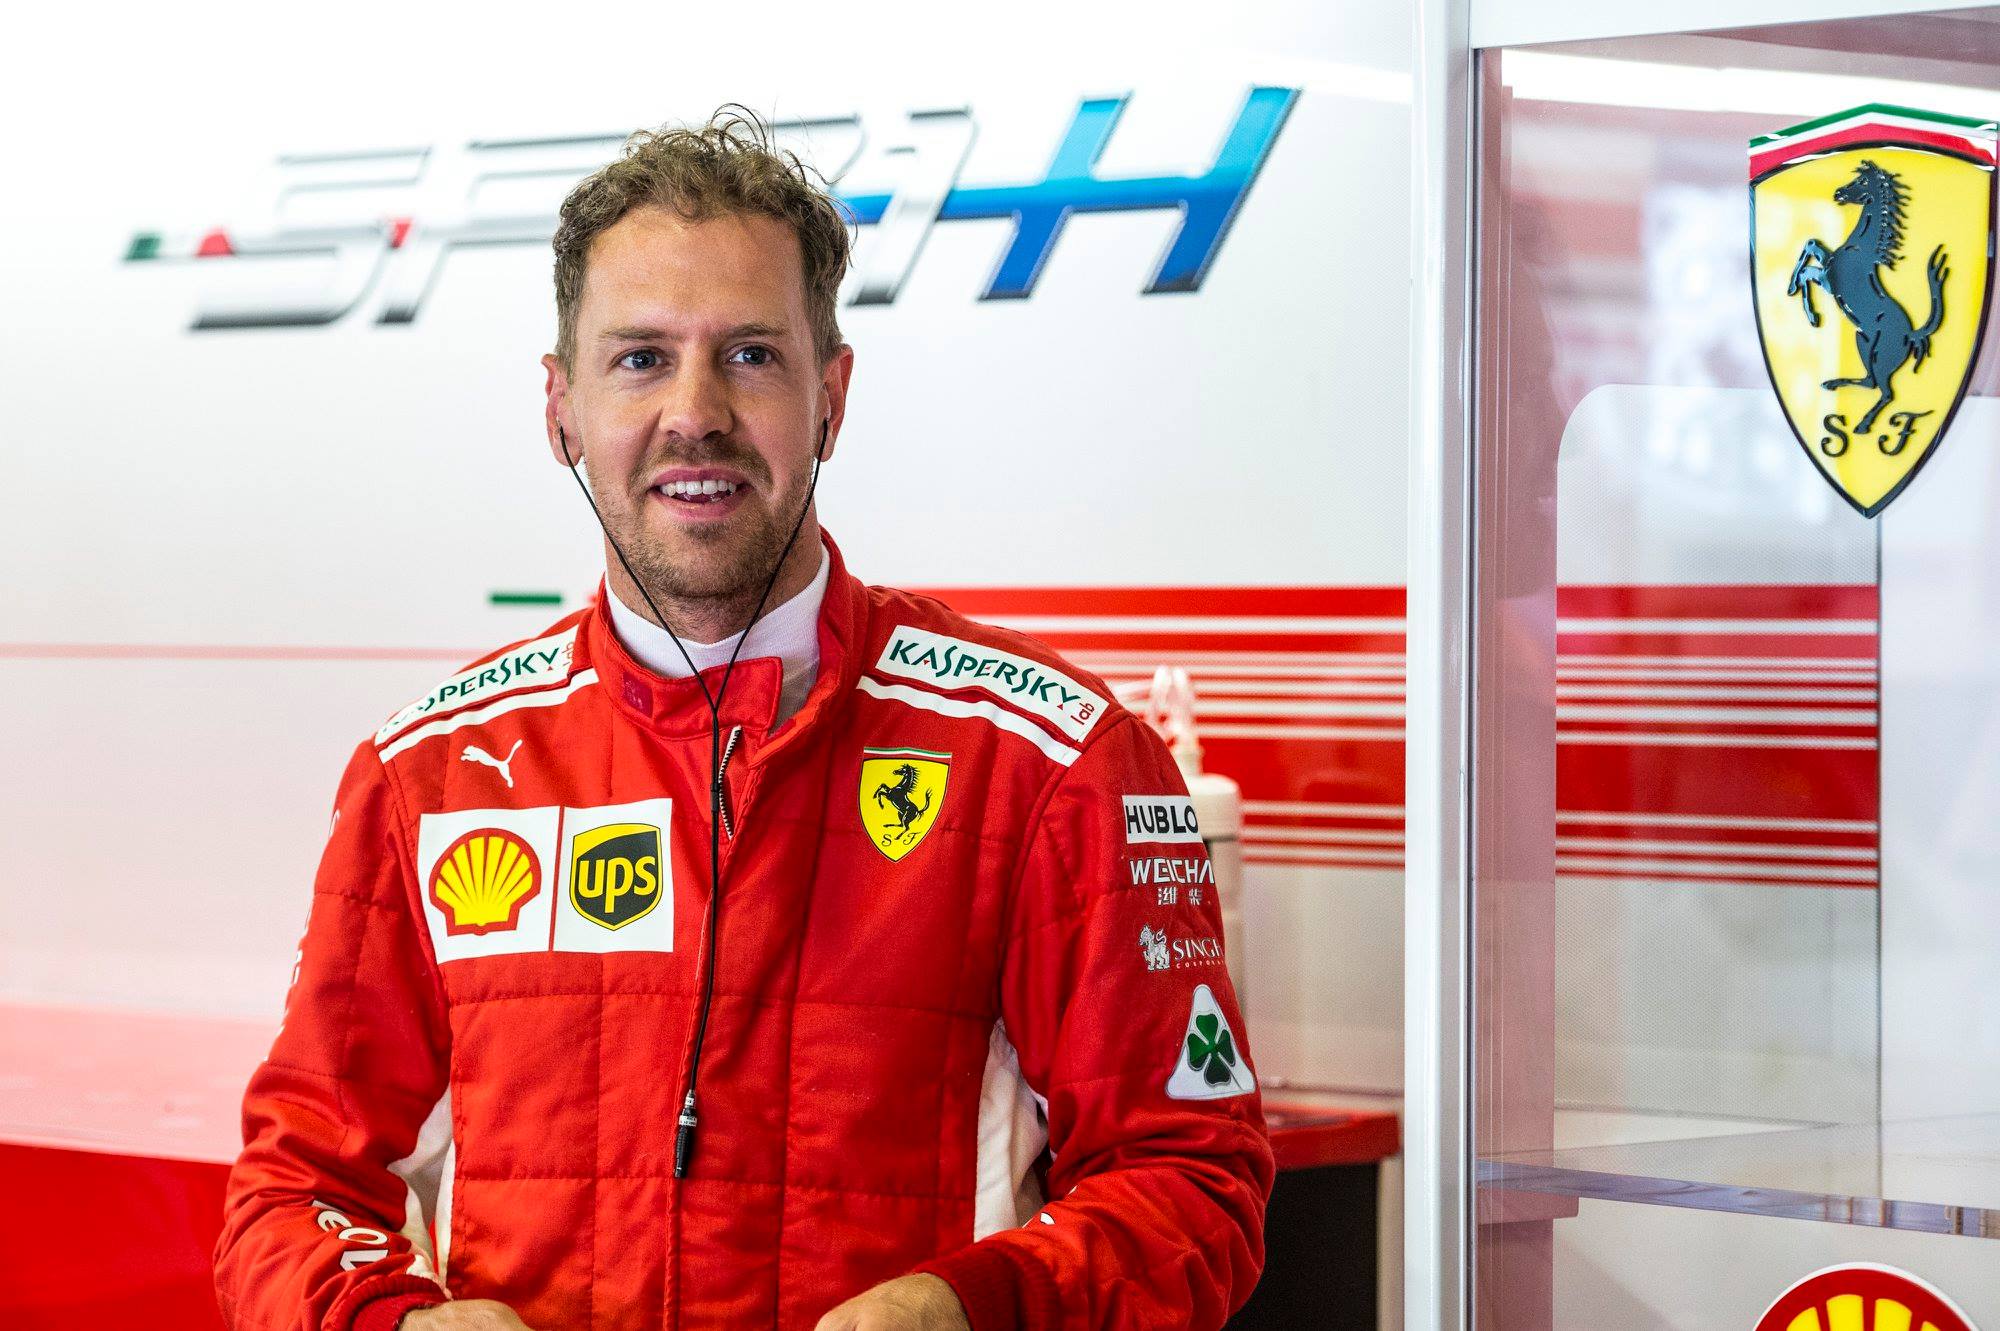 S. Vettelis: F-1 neatspindi to, koks aš esu